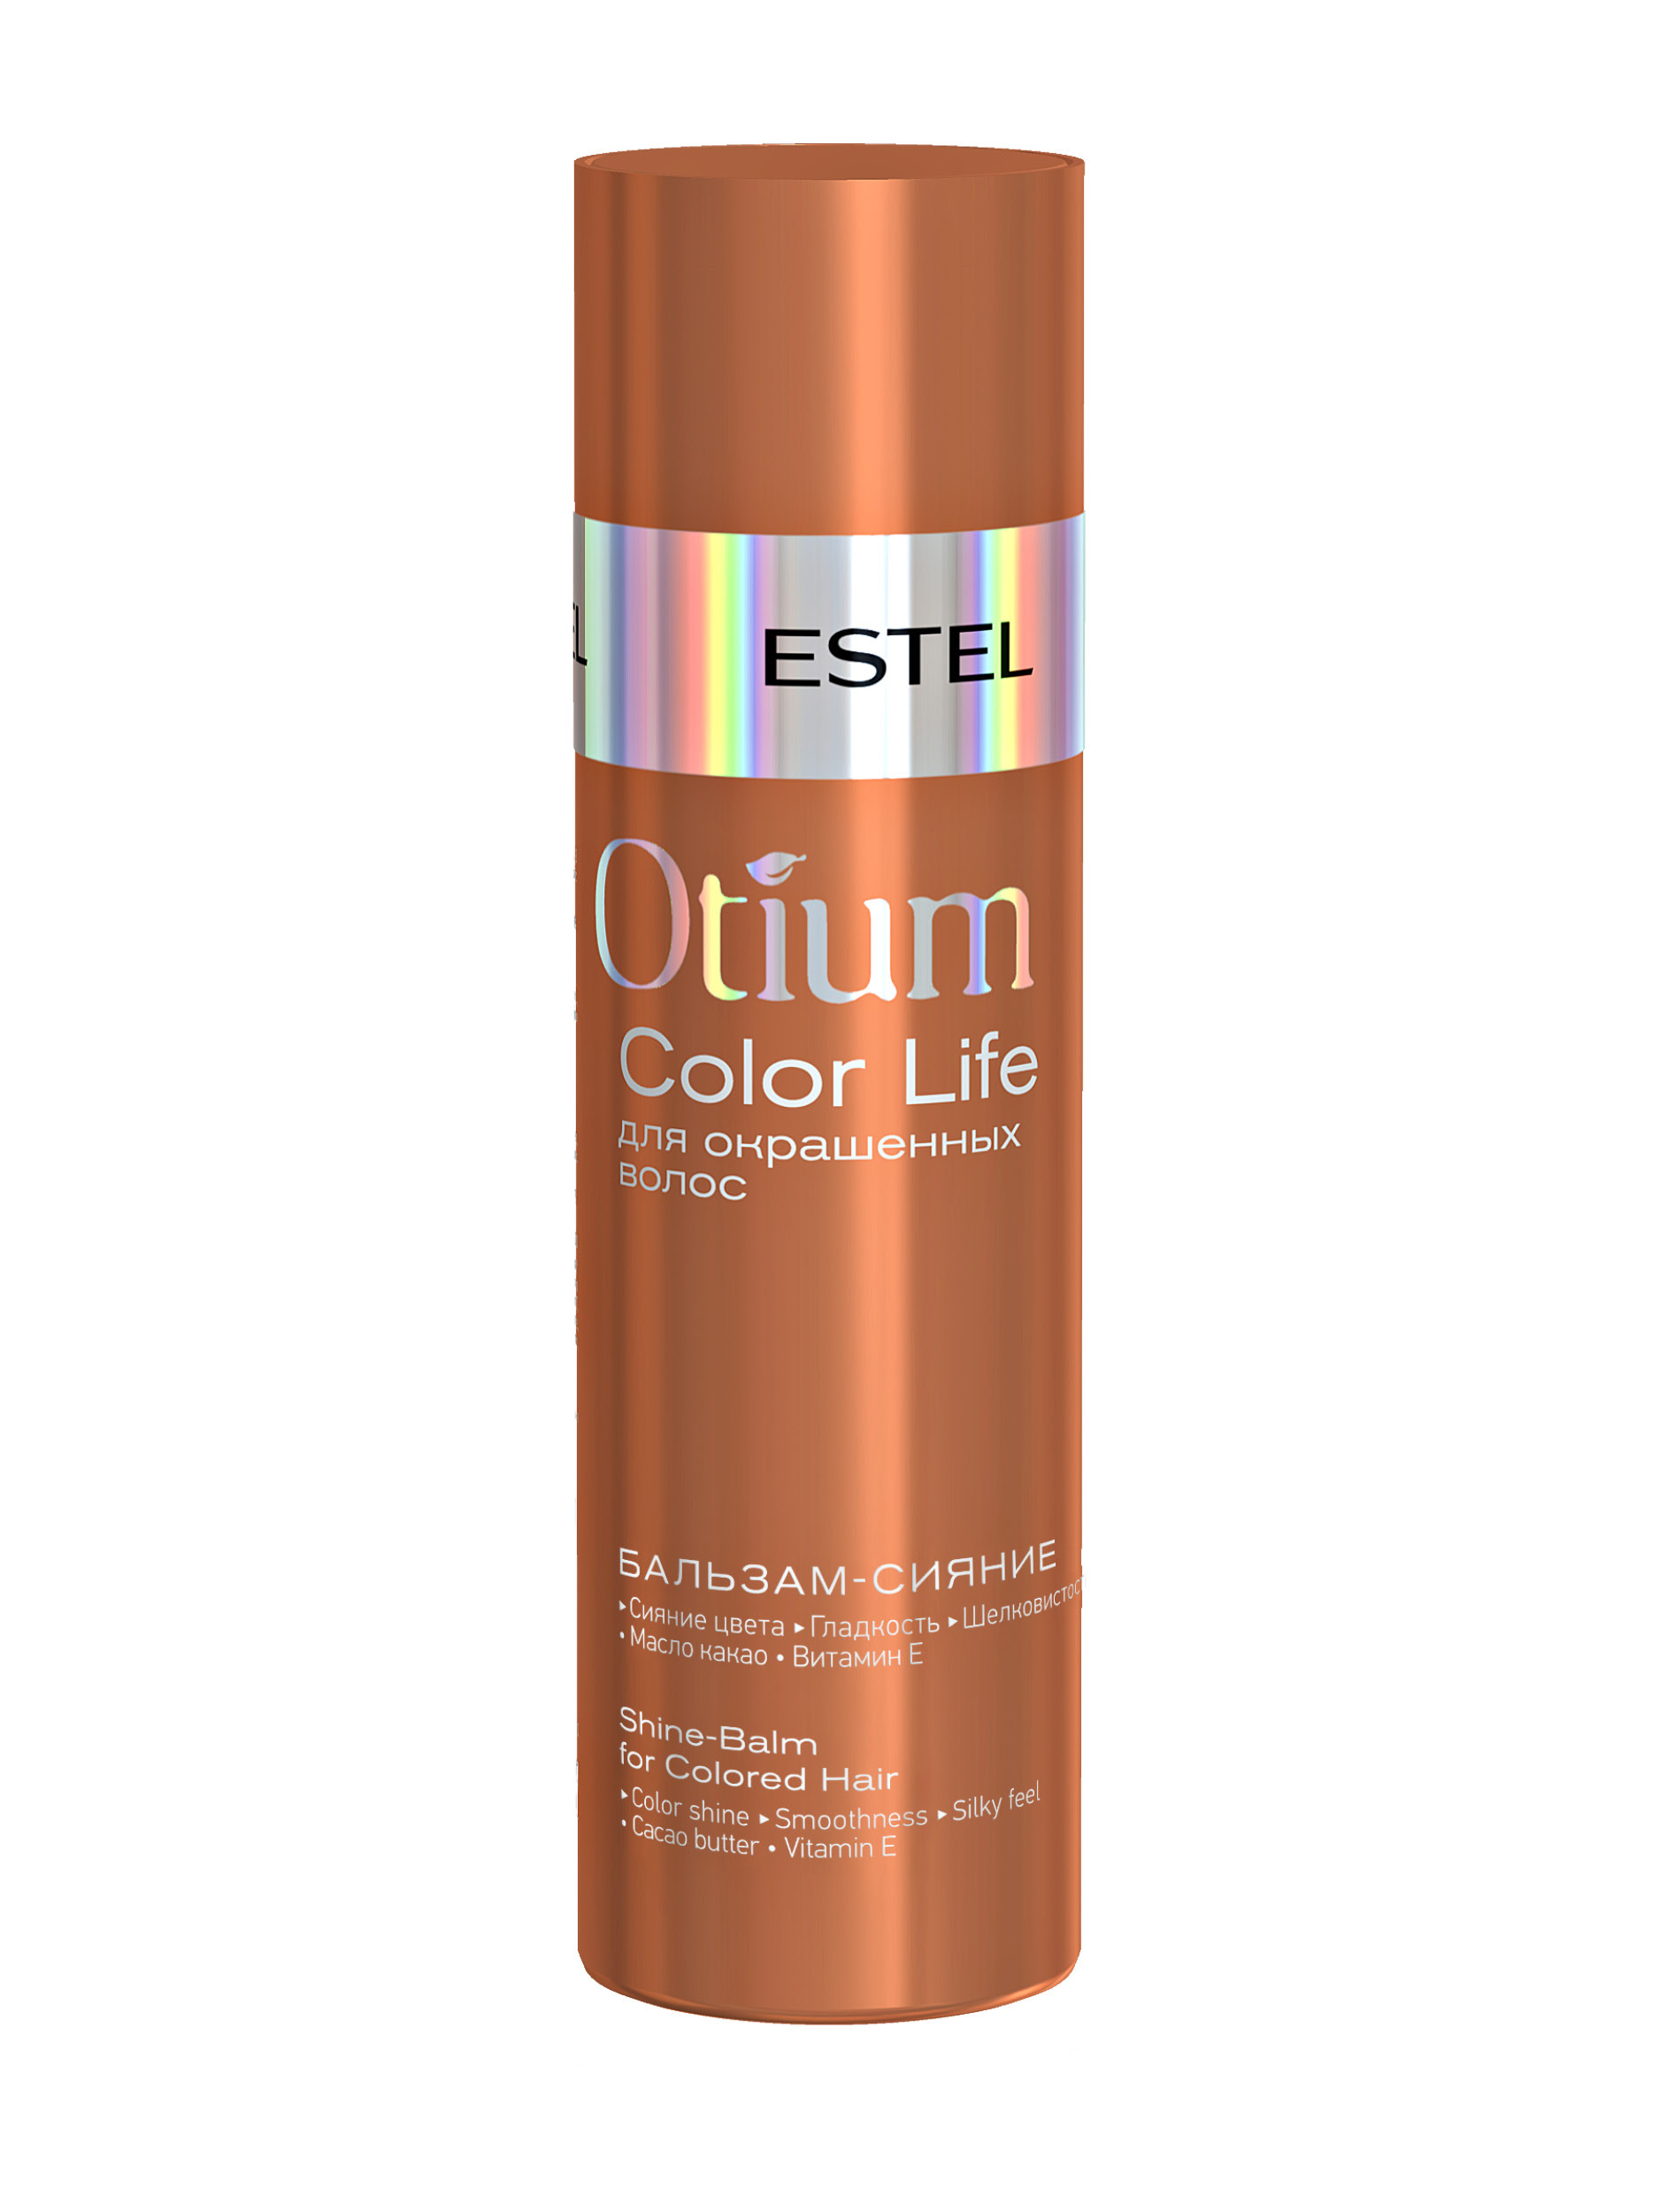 Life color шампунь. Деликатный шампунь для окрашенных волос Otium Color Life (1000 мл). Estel Otium Color Life шампунь. Деликатный шампунь Color Life для окрашенных волос 250. Estel бальзам сияние Otium Color Life для окрашенных волос 200мл.